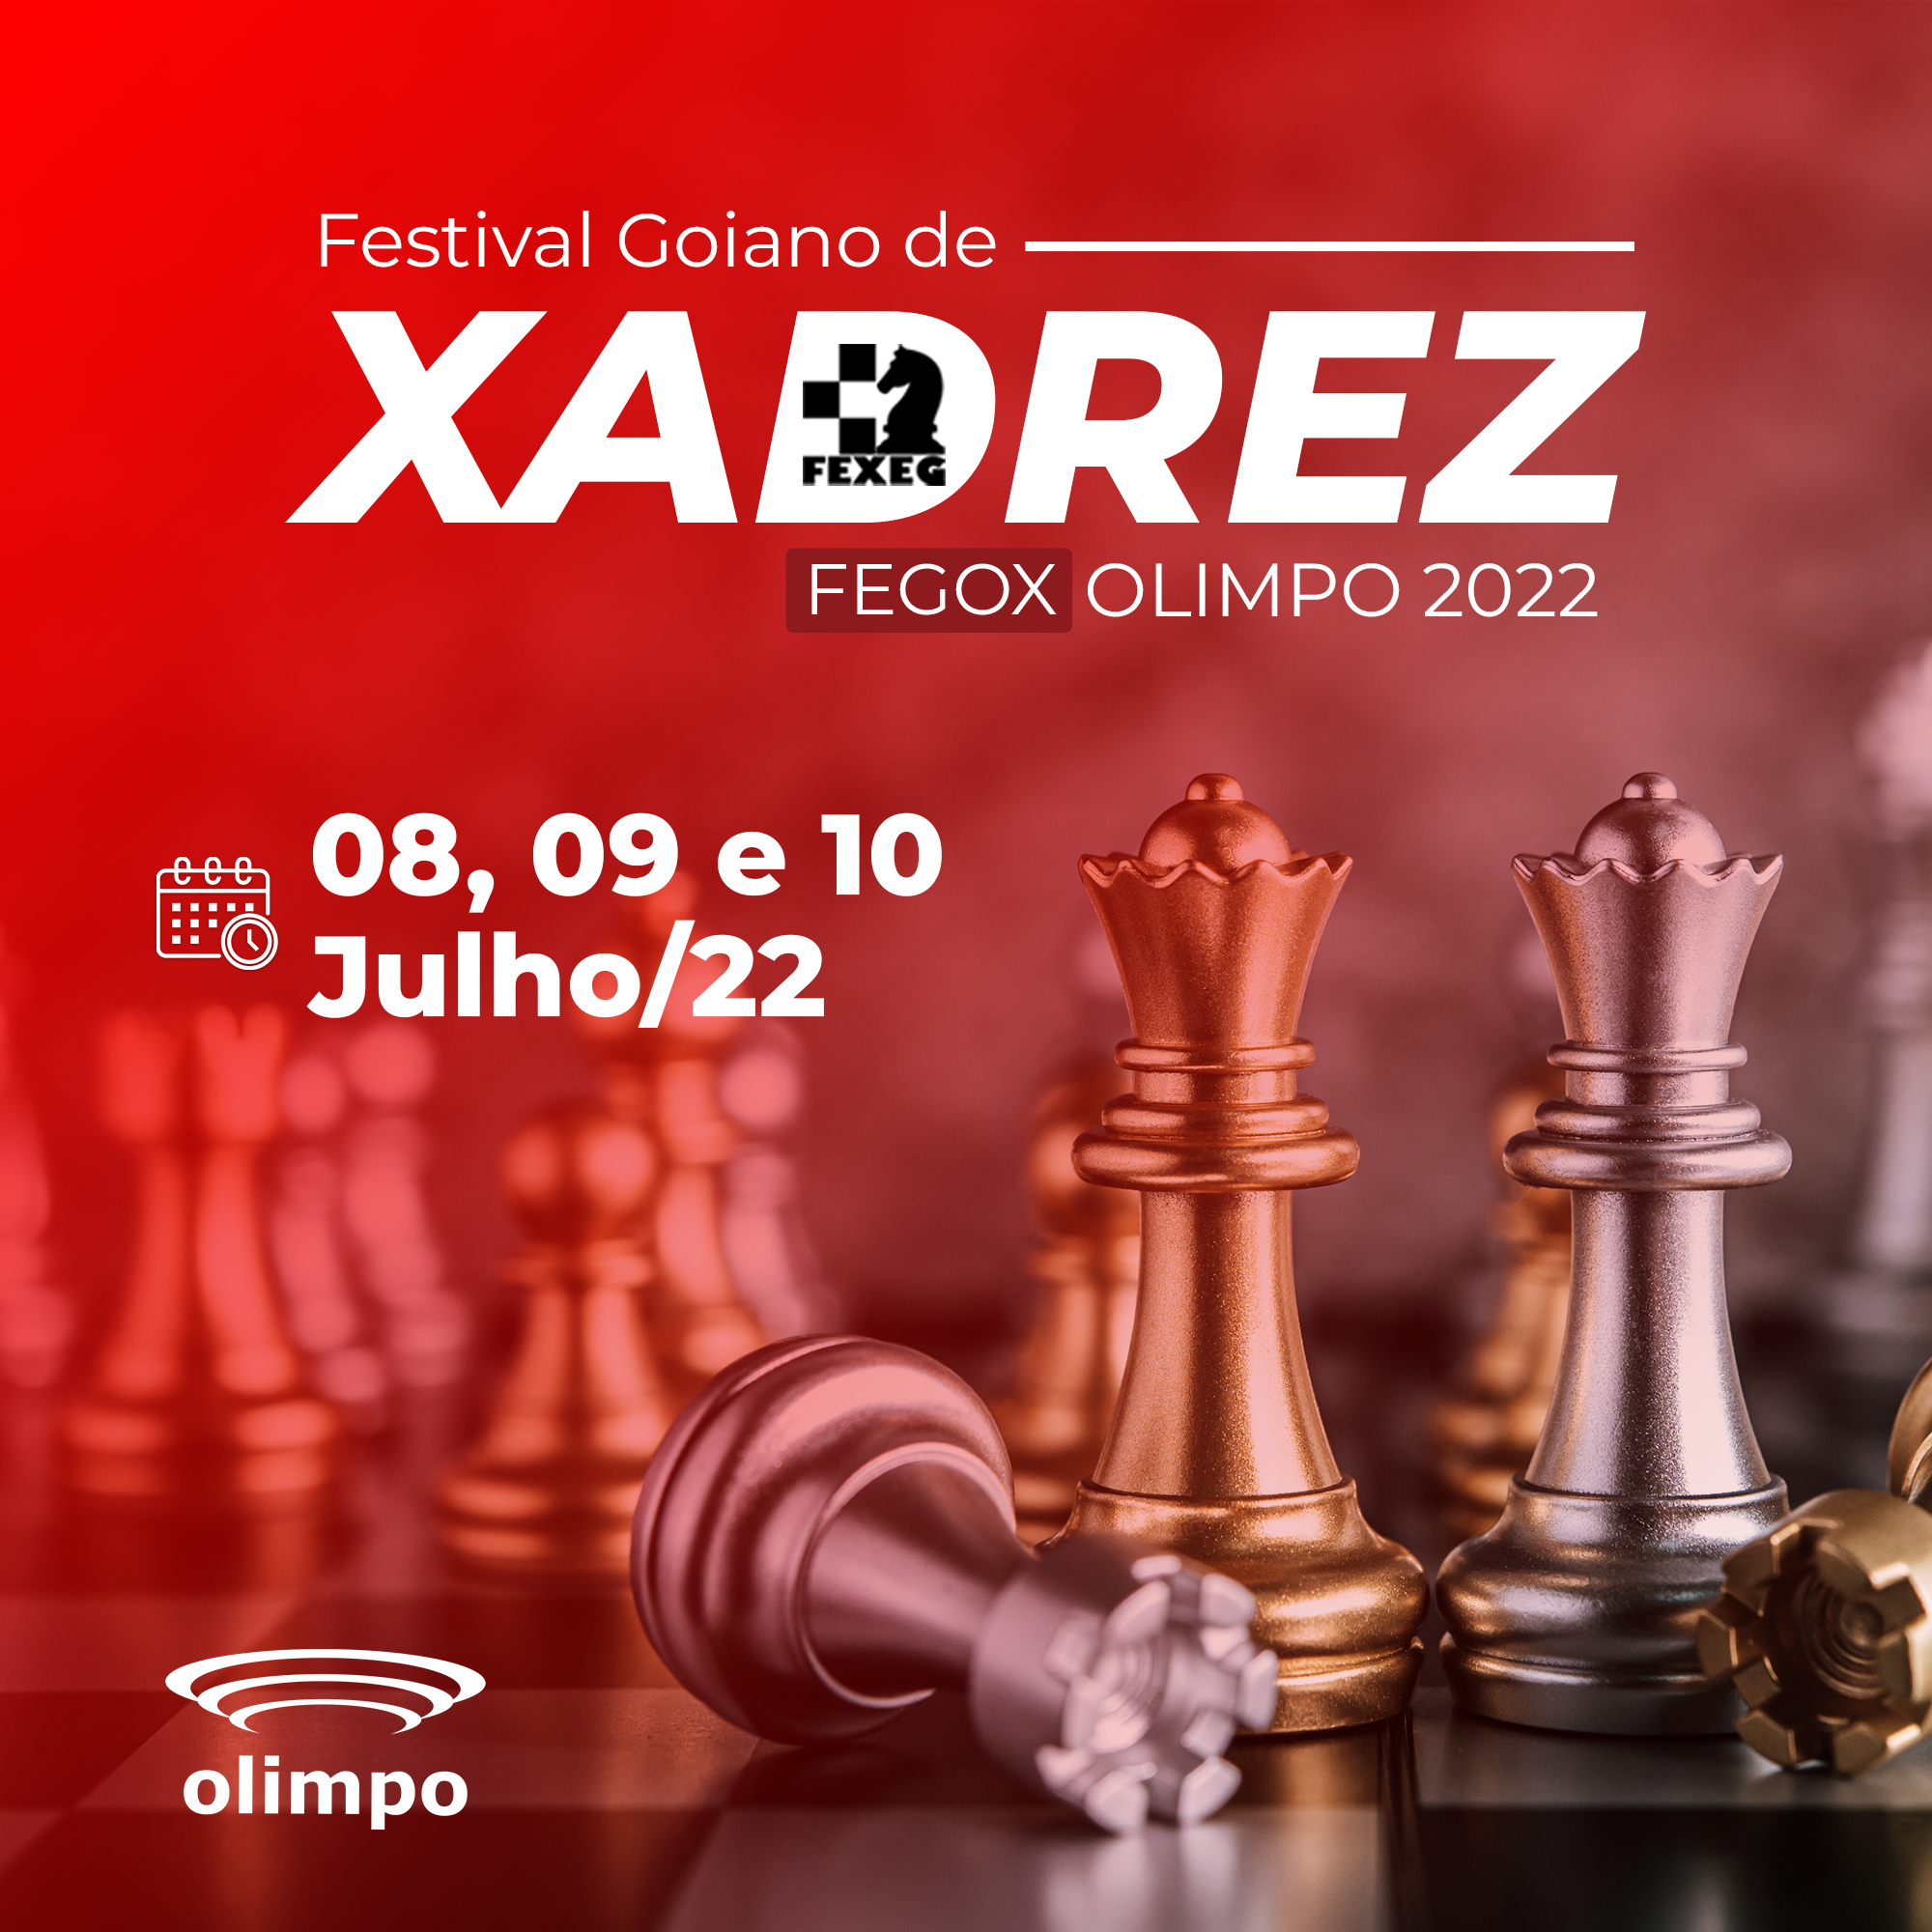 Torneio de xadrez será realizado pela primeira vez em Aparecida de Goiânia